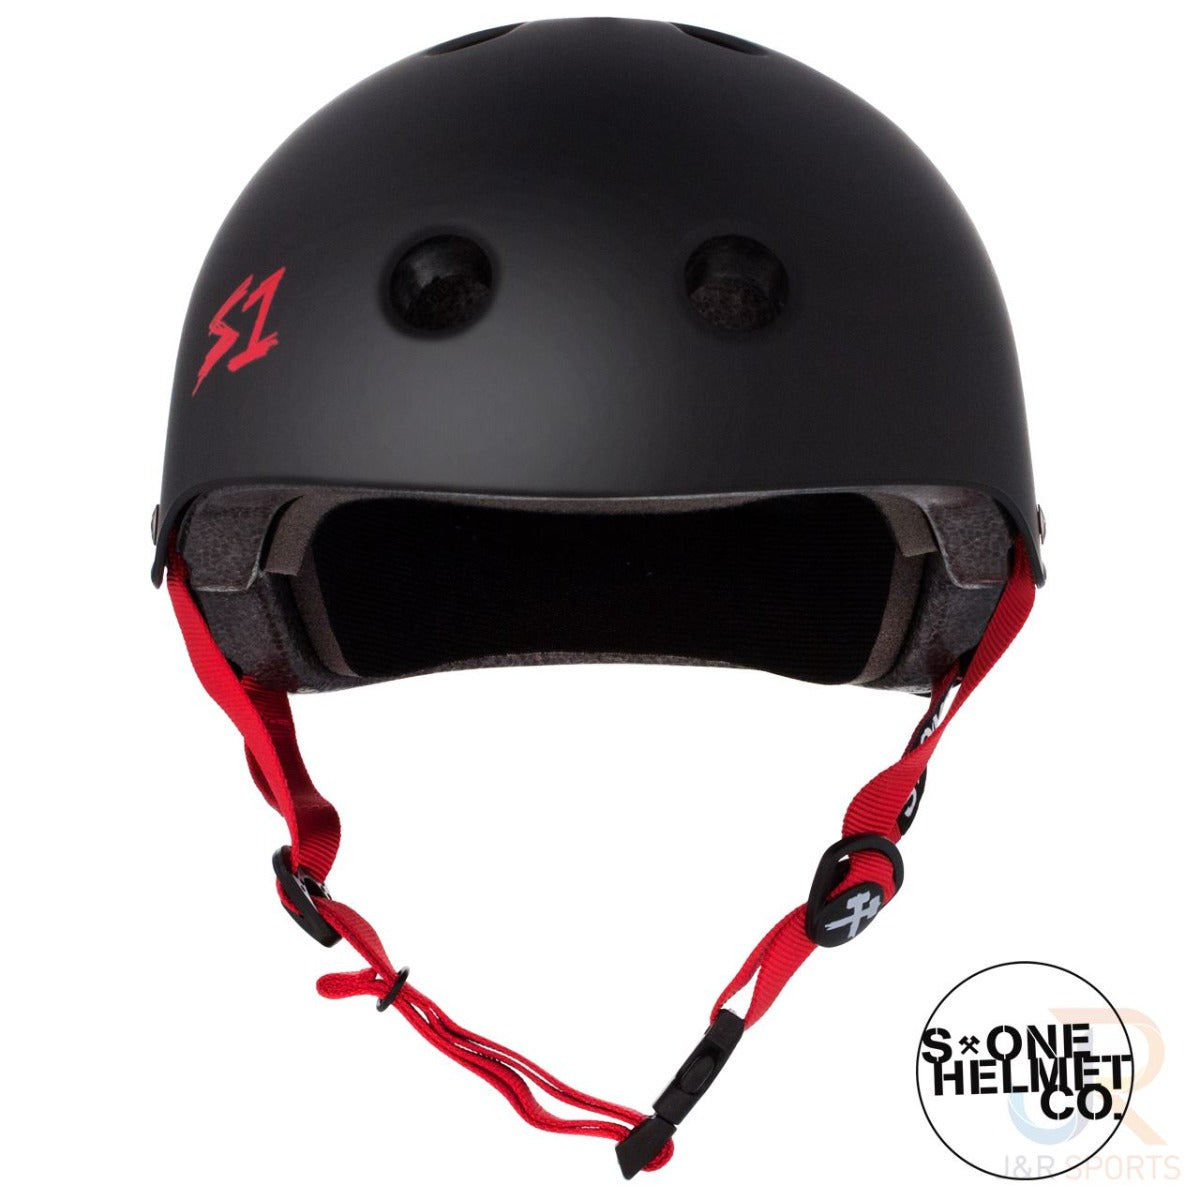 S1 Lifer Skate / Scooter Helmet - Matt Black / Red - Front